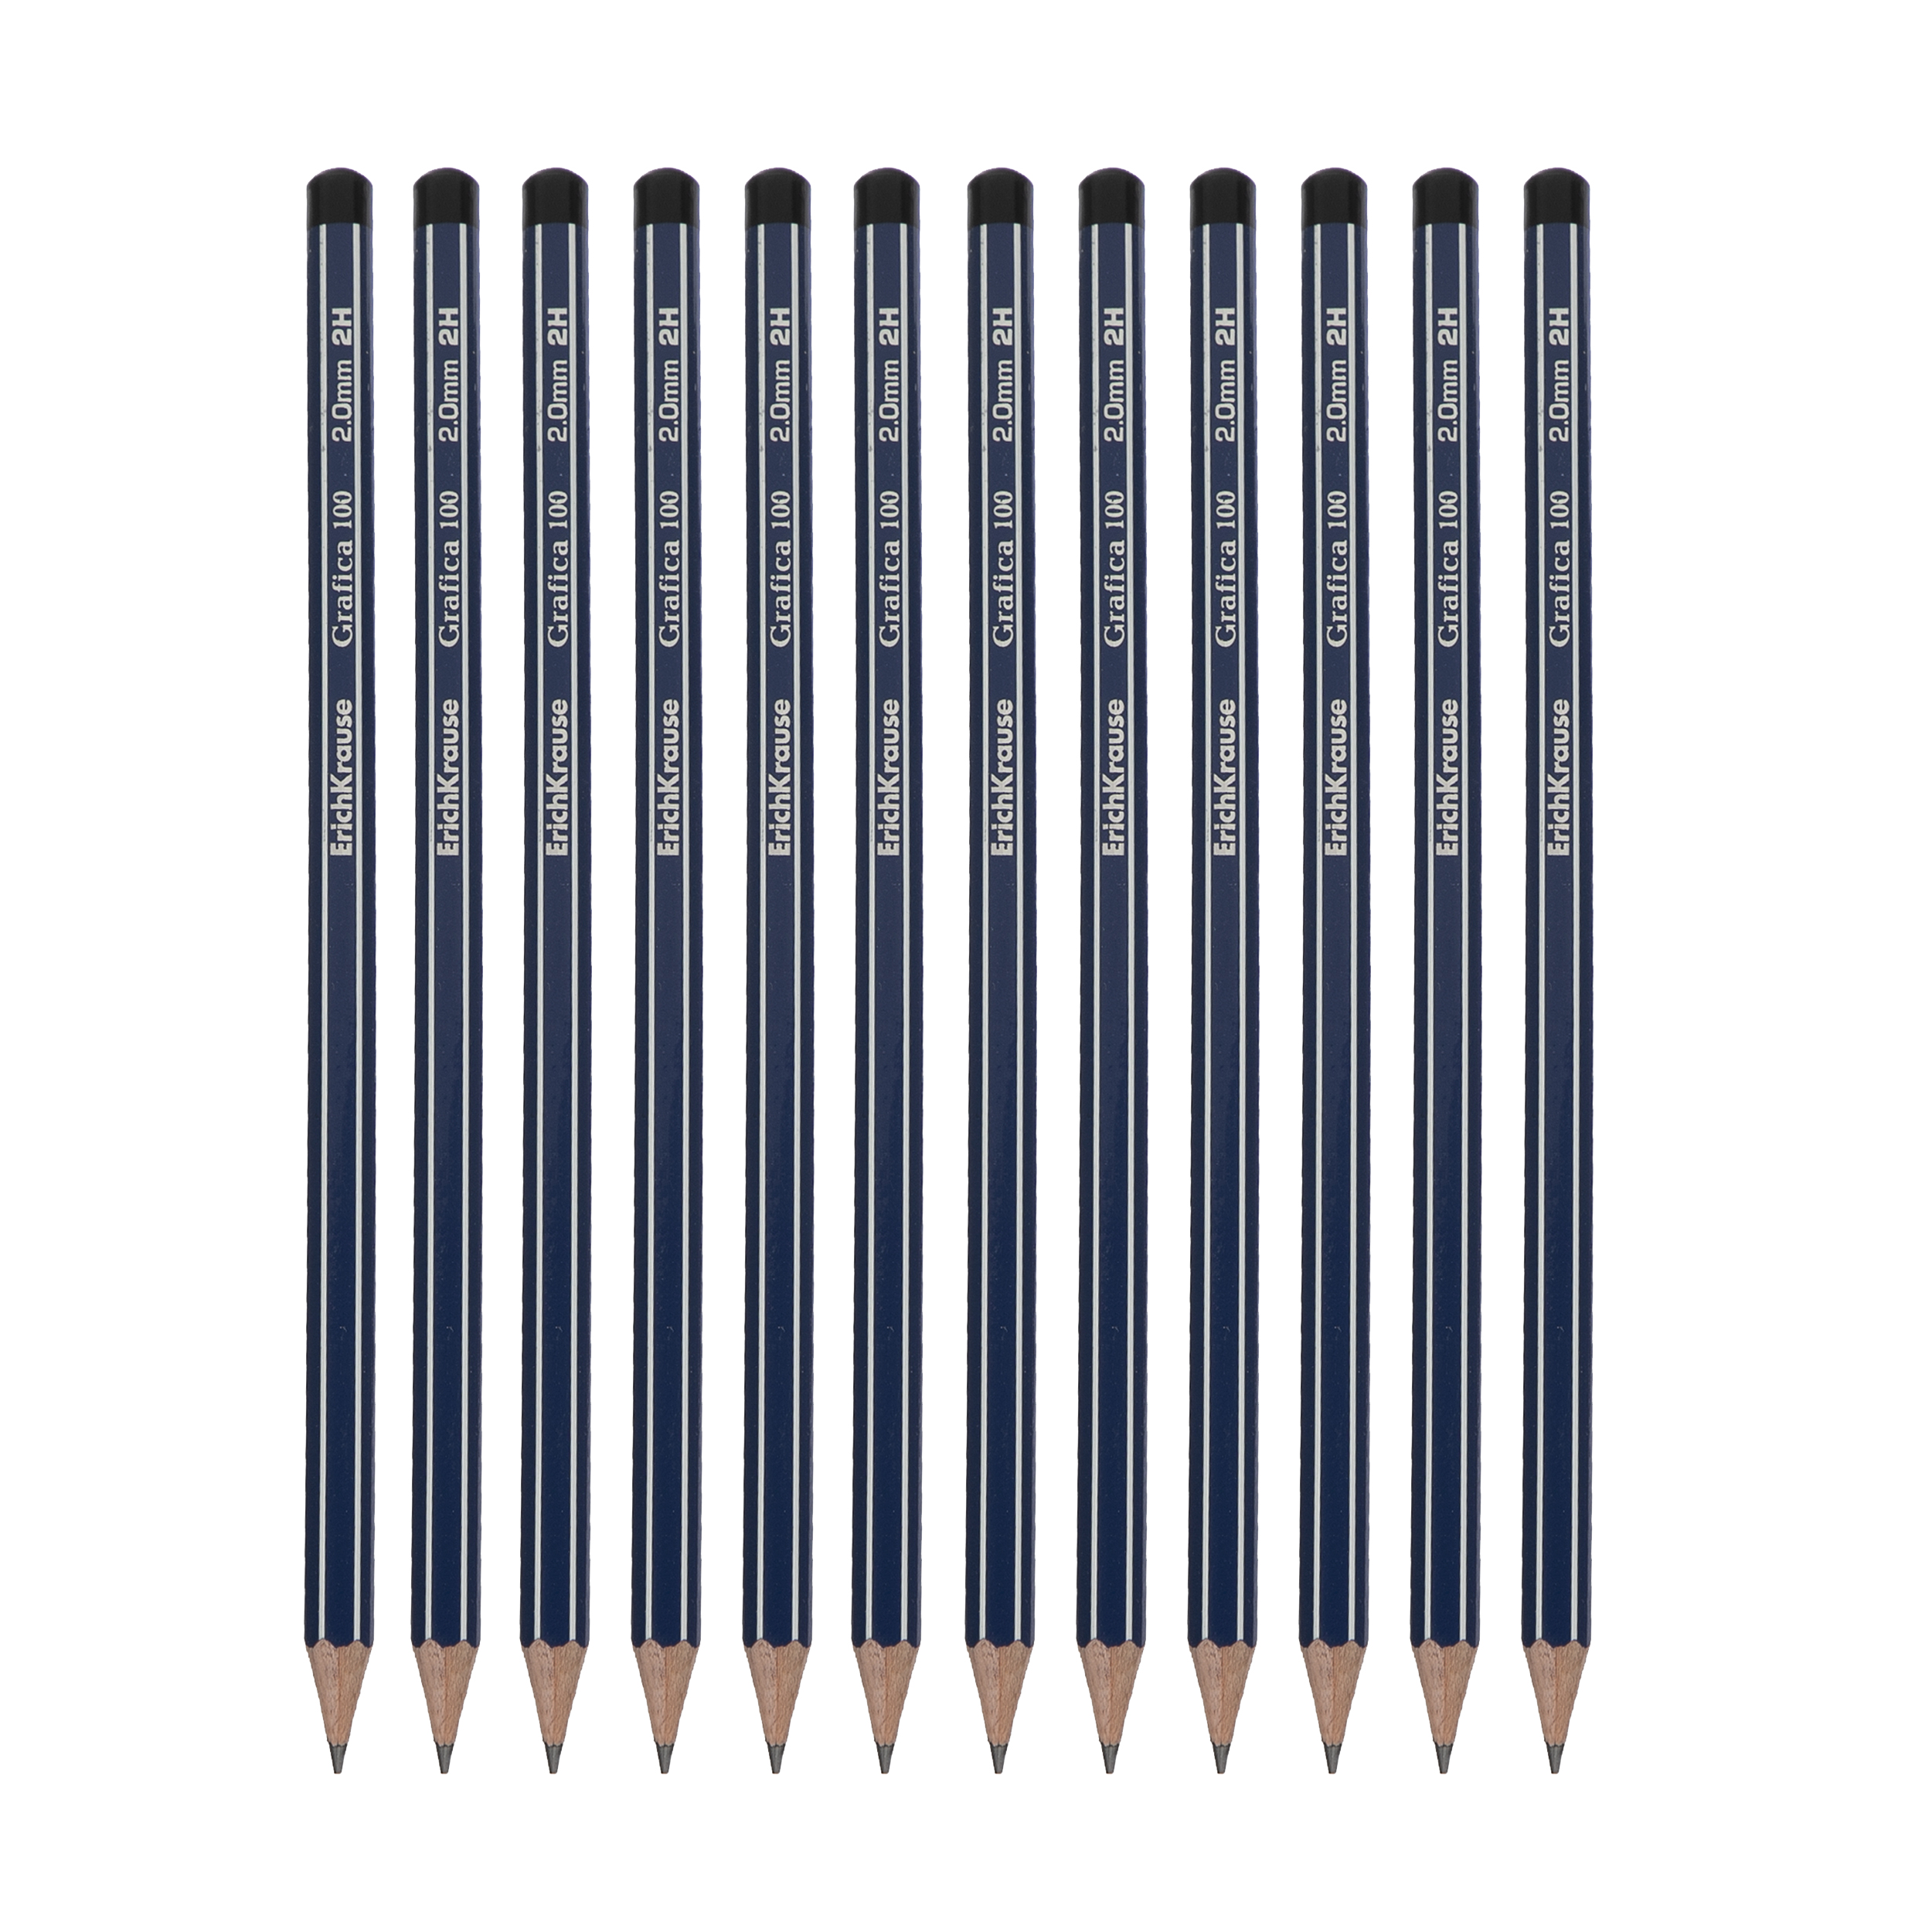 مداد مشکی اریک کراوزه مدل grafica 100 کد 32849 بسته 12 عددی